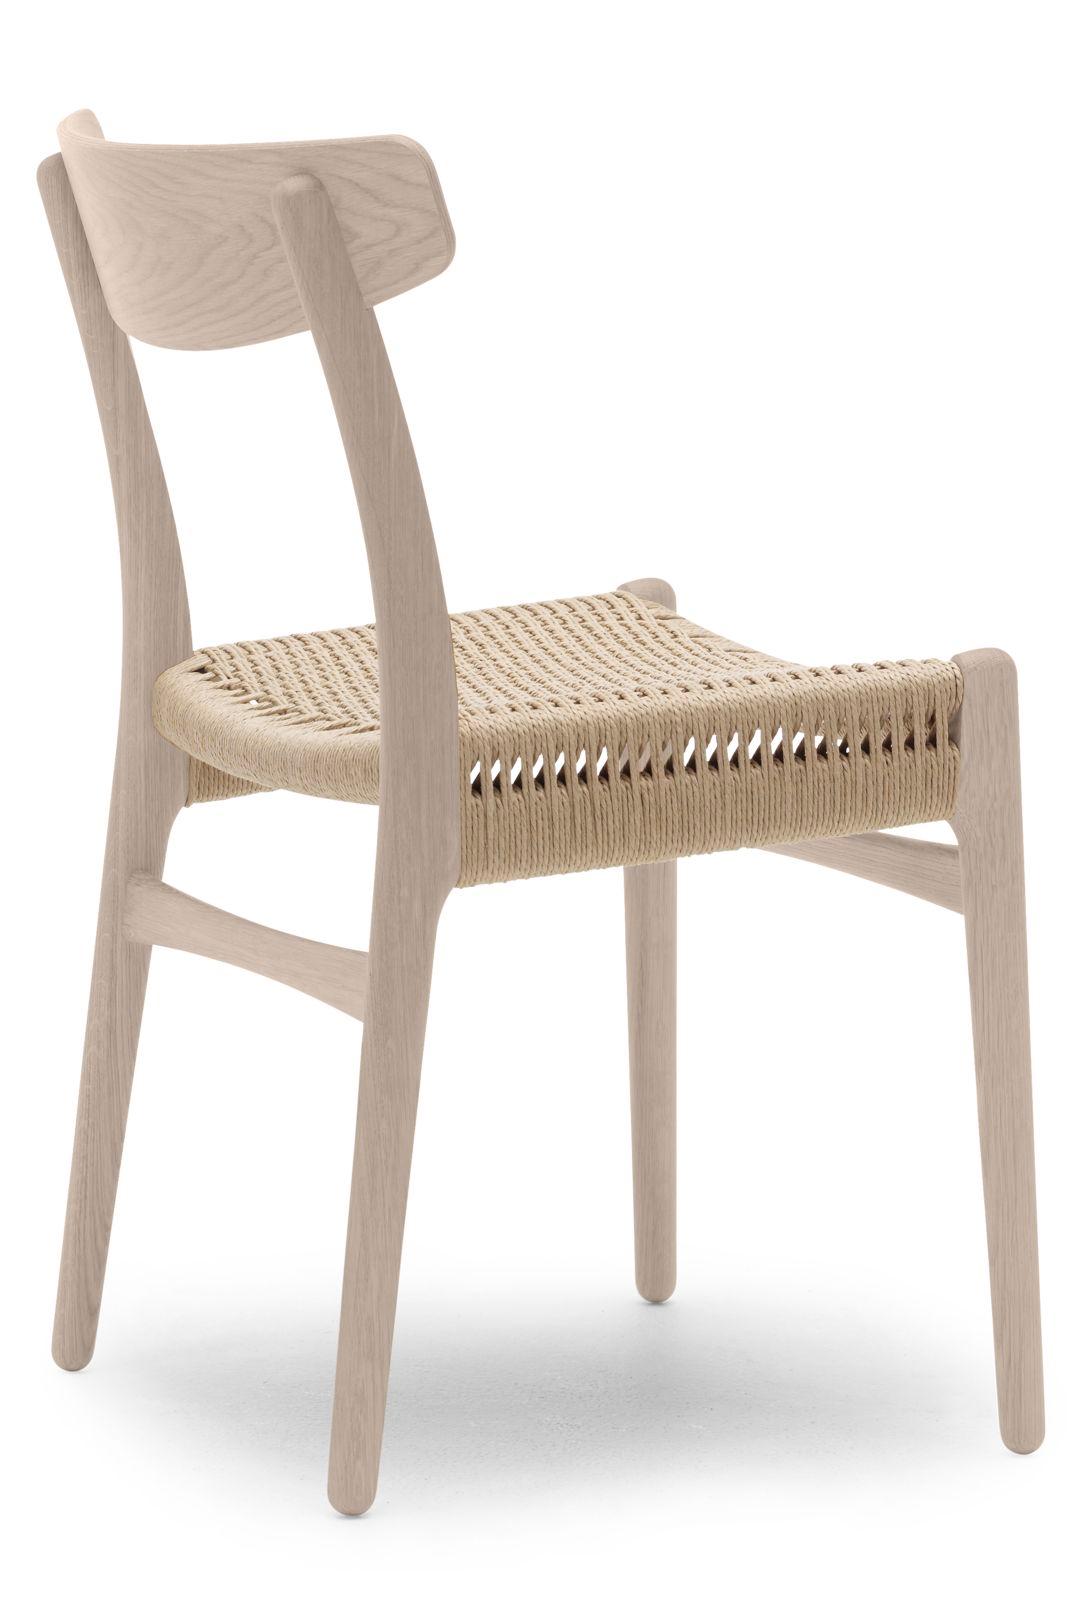 Présentée pour la première fois en 1950, la chaise de salle à manger CH23 présente des contours nets et organiques ainsi qu'un style raffiné, démontrant l'approche unique du jeune Hans J. Wegner en matière de design et sa perspicacité en matière